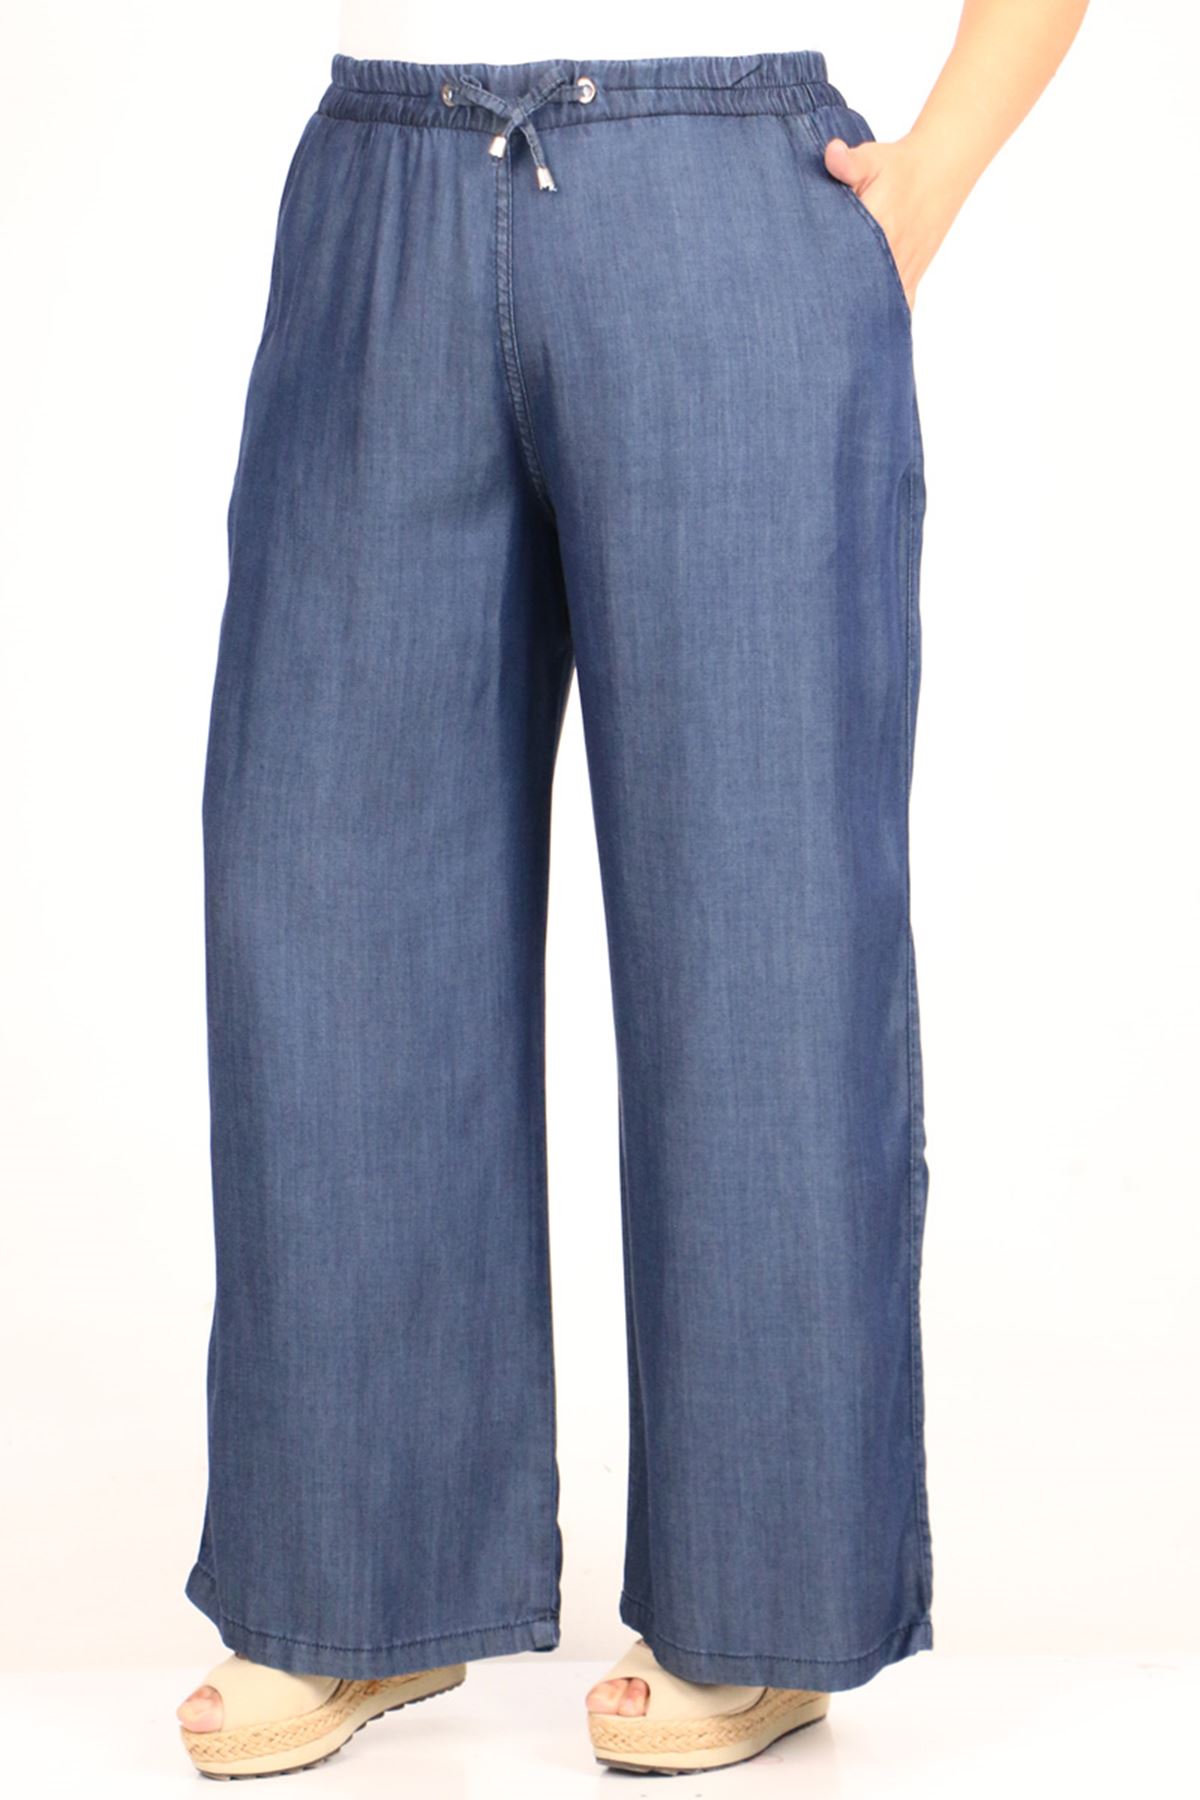 29000-2 Plus Size Plentiful Trotter Jeans Pants - Navy blue